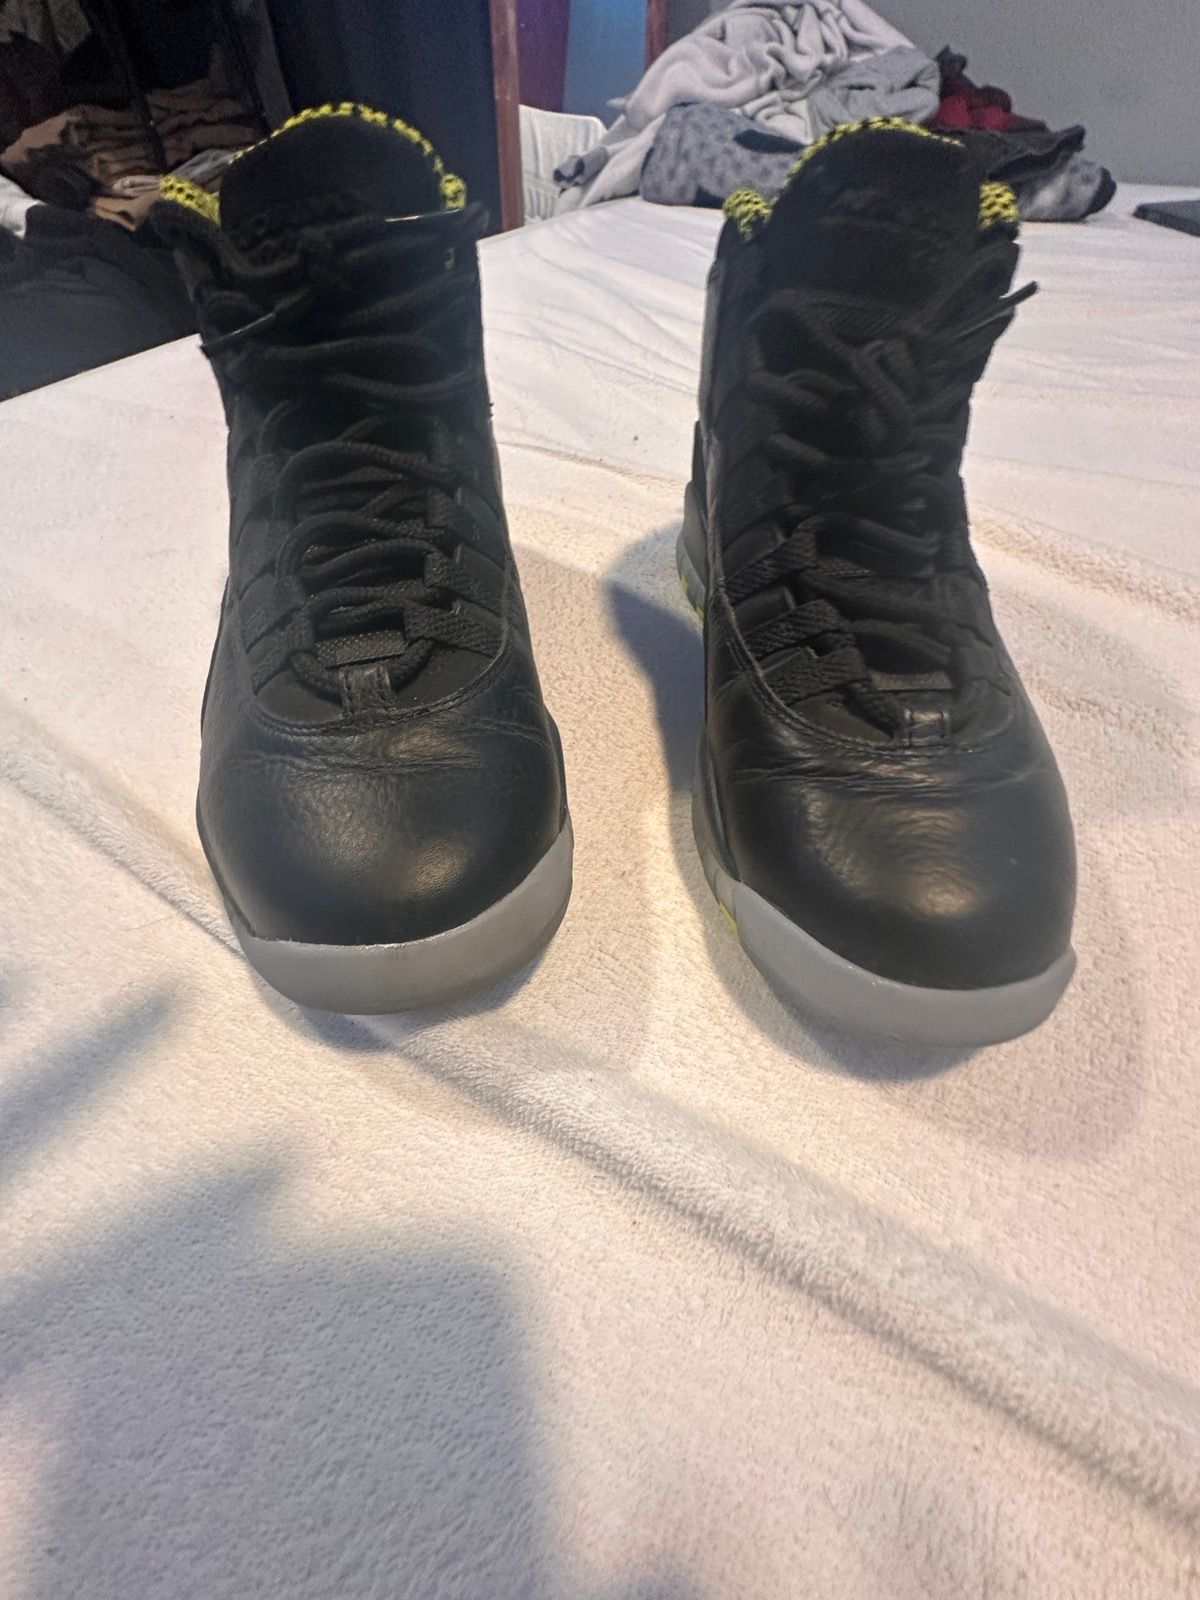 Nike Jordan retro 10 venoms Size US 8.5 / EU 41-42 - 9 Thumbnail